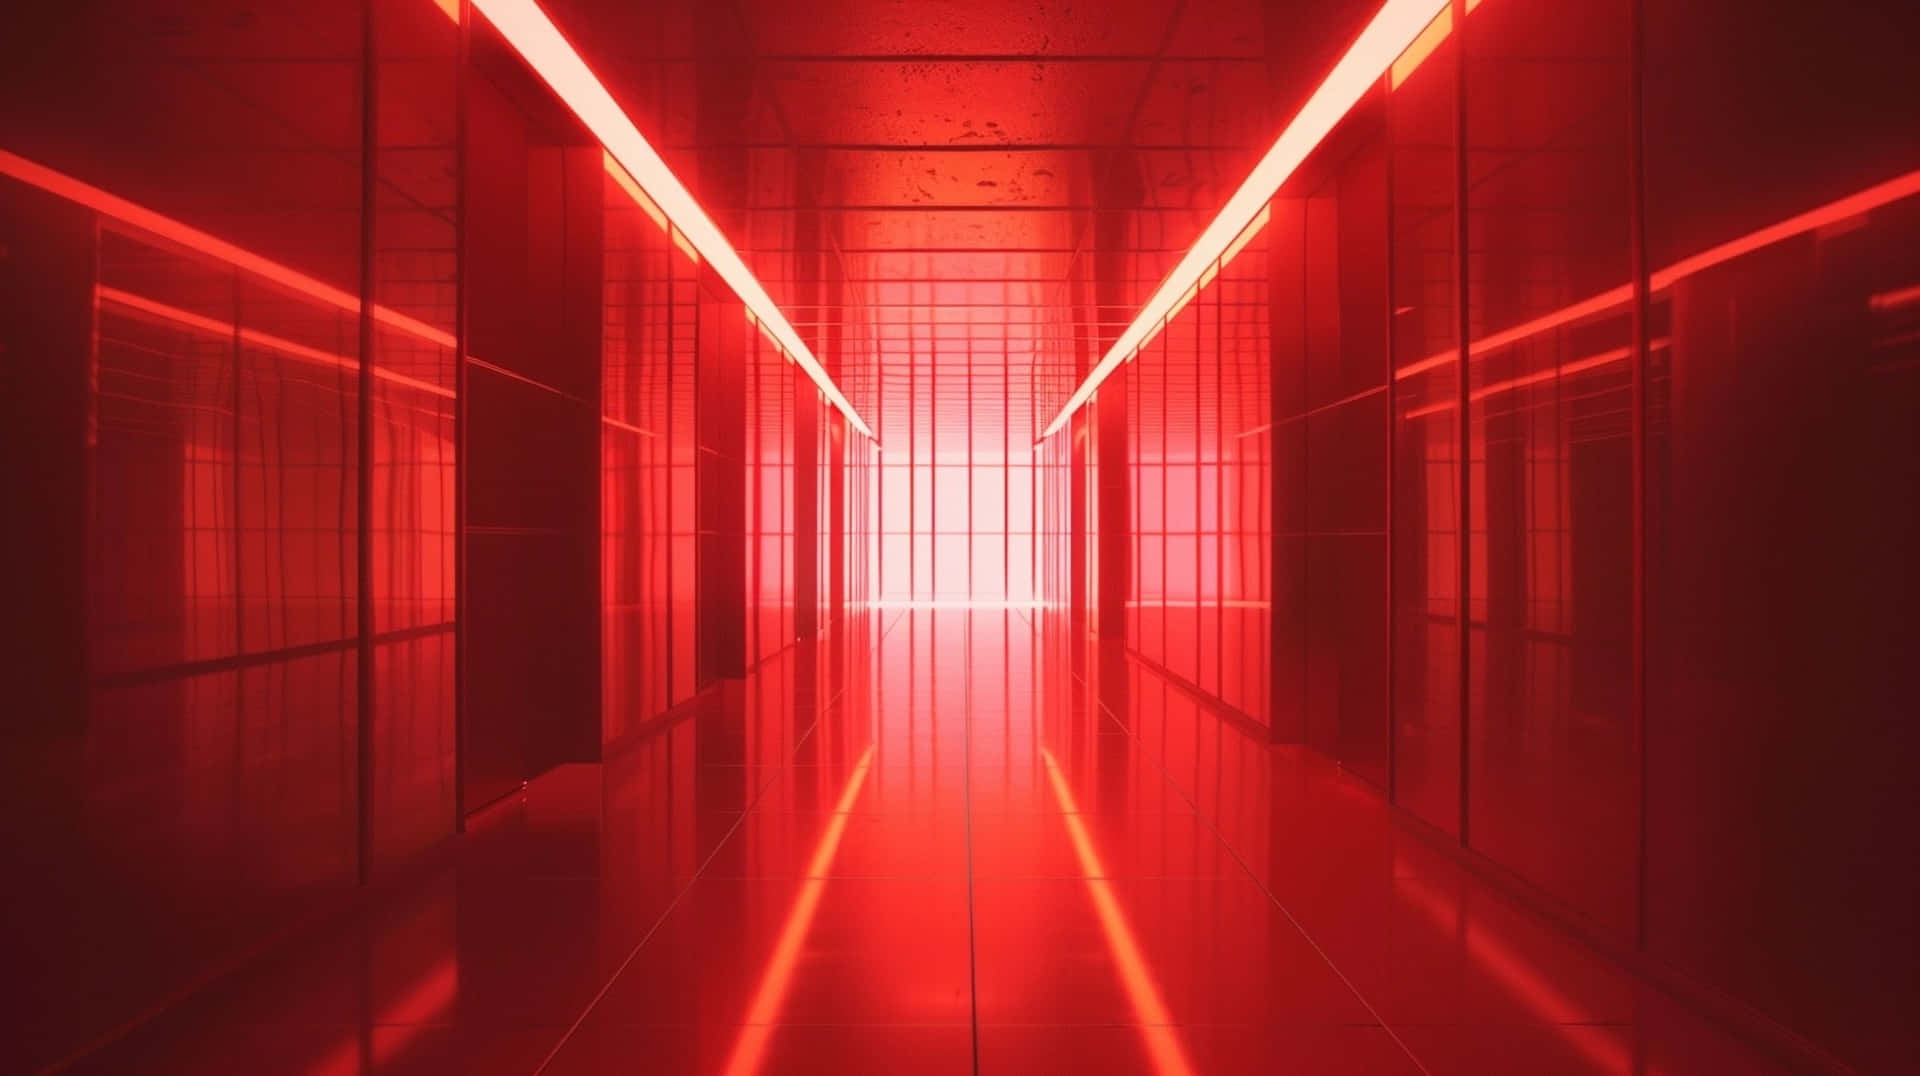 Red Y2 K Aesthetic Corridor.jpg Wallpaper